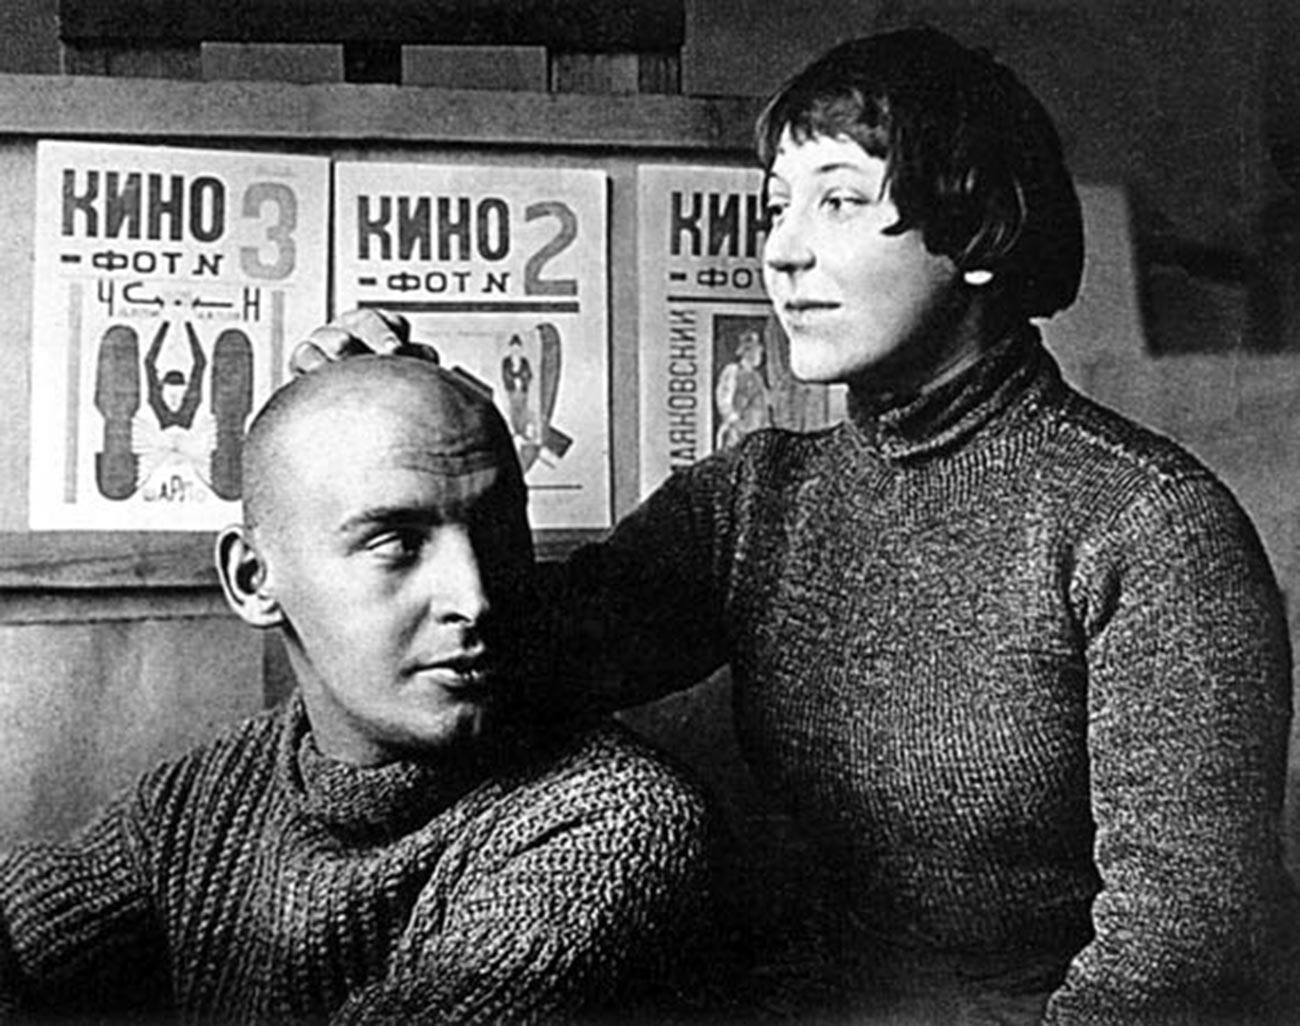 Warwara Stepanowa mit ihrem Ehemann, dem berühmten Avantgarde-Künstler Alexander Rodtschenko.